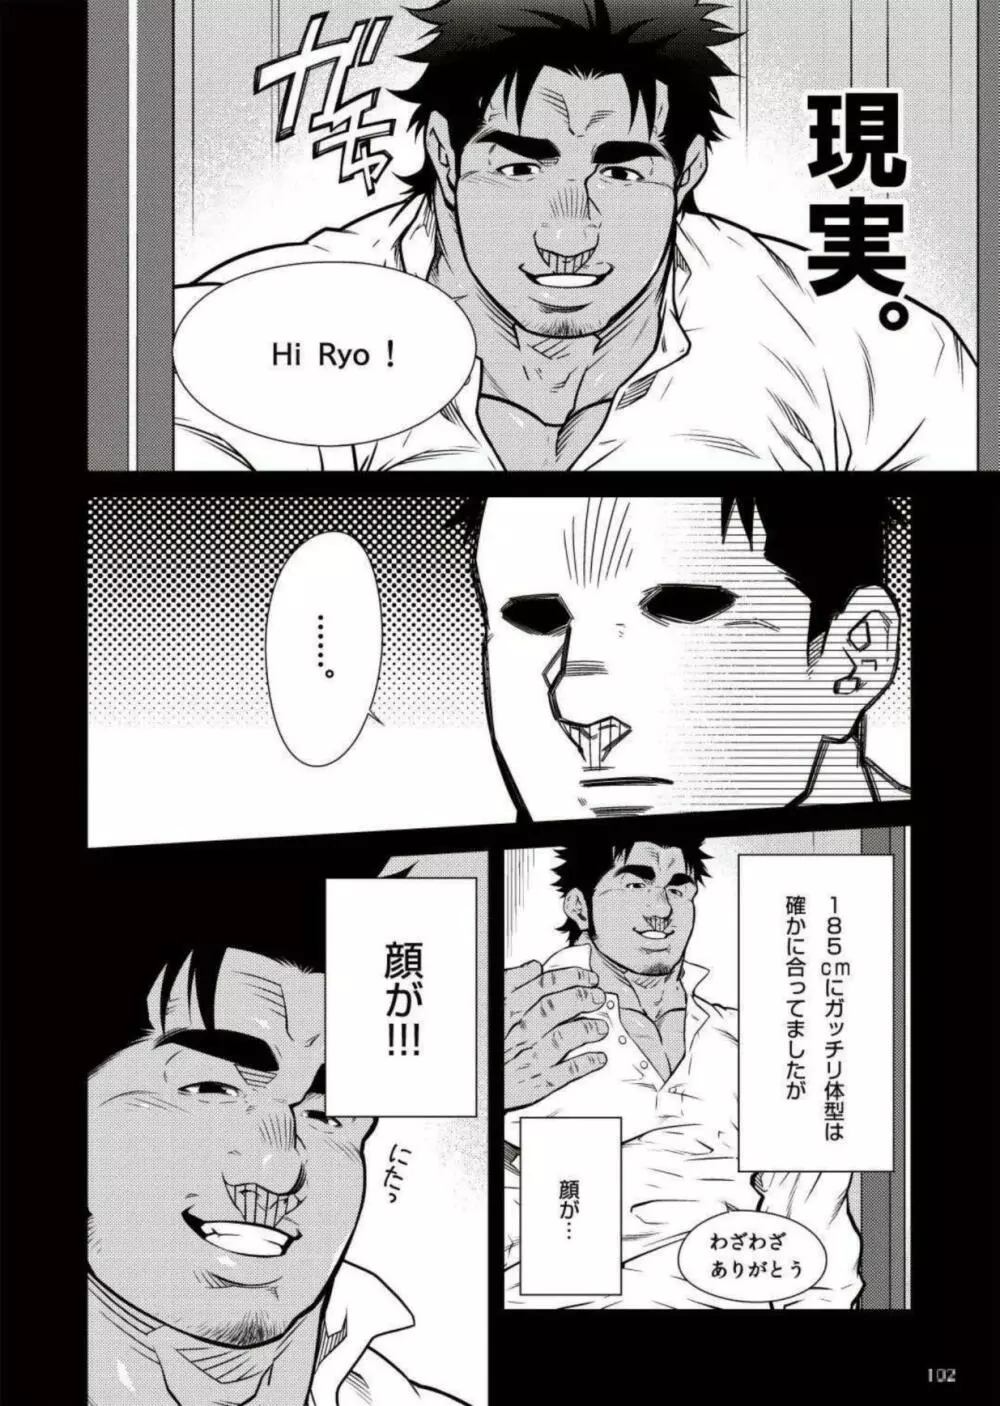 Terujirou - 晃次郎 - Badi Bʌ́di (バディ) 111 (May 2015) Page.4